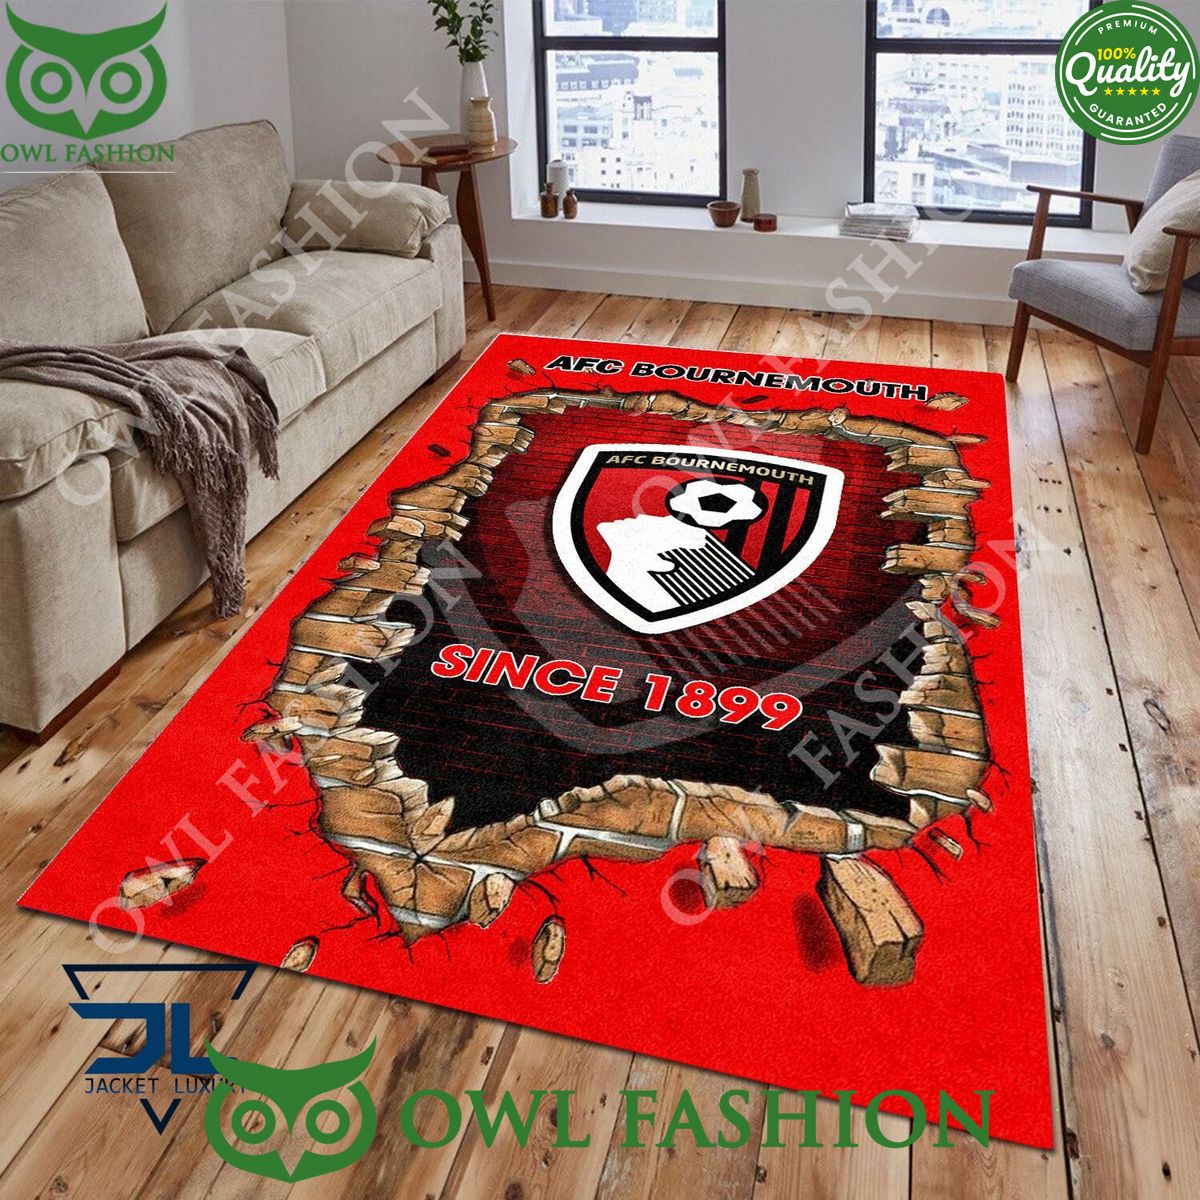 A.F.C. Bournemouth 1866 Premier League Living Room Carpet